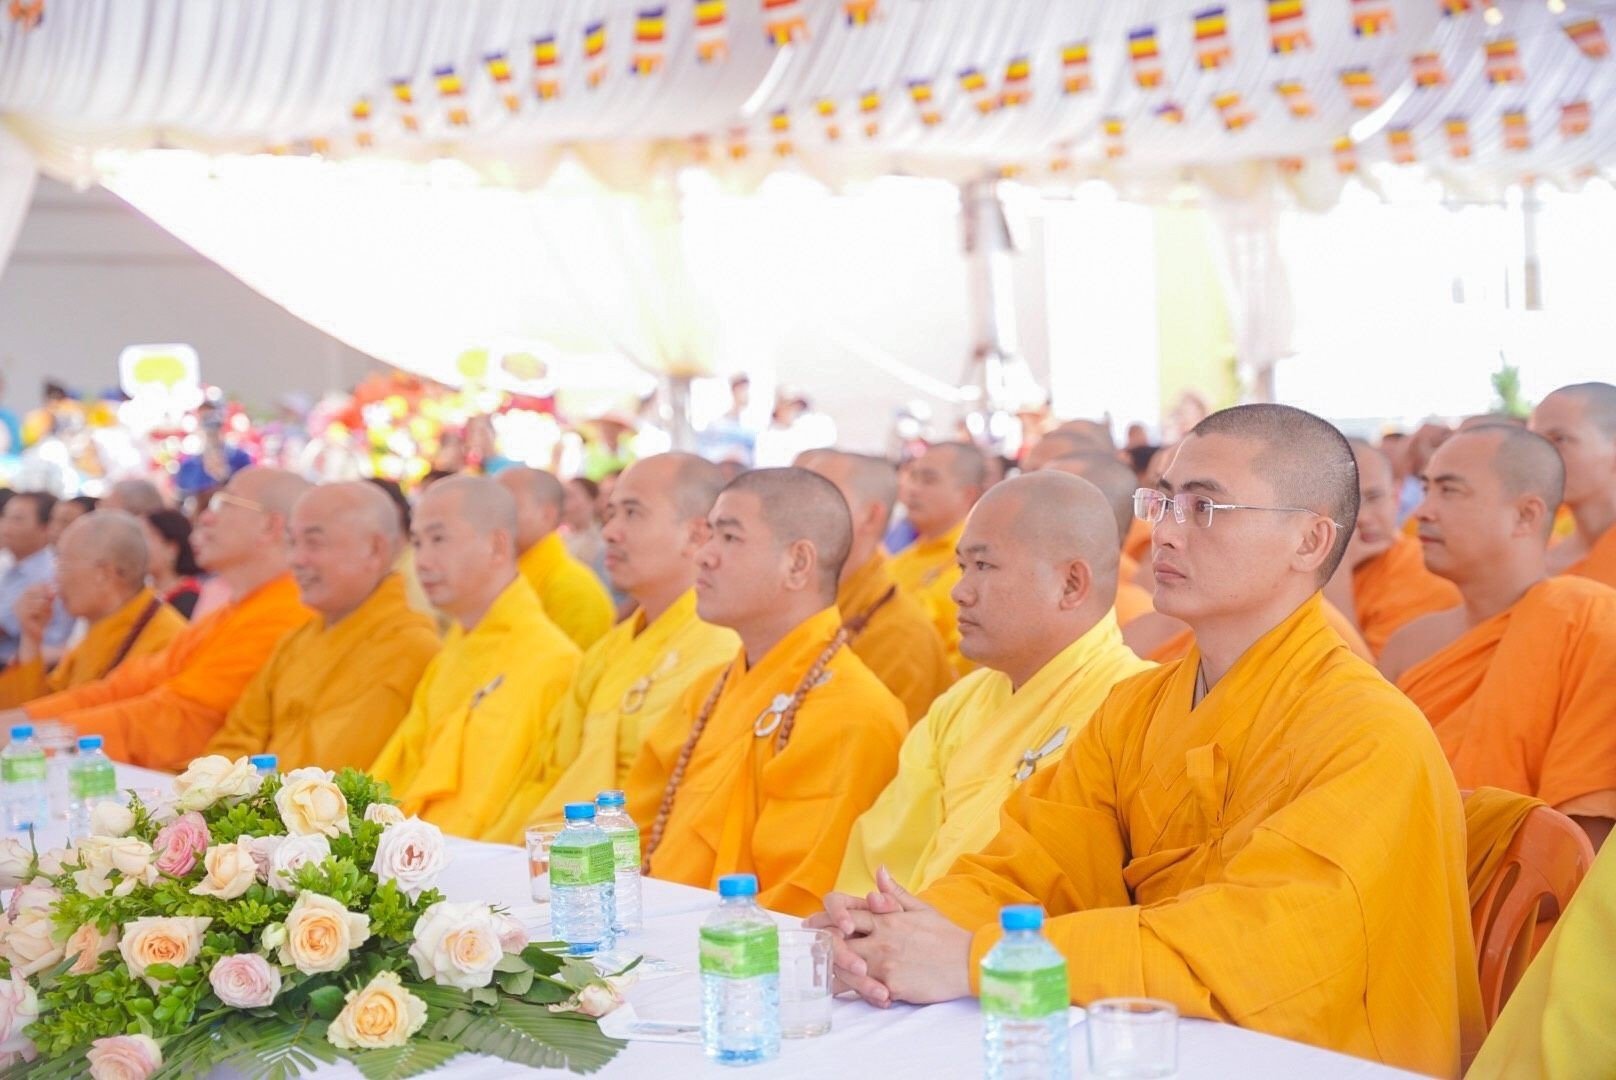 Quý chư Tôn đức Tăng quang lâm tham dự đại lễ Phật đản